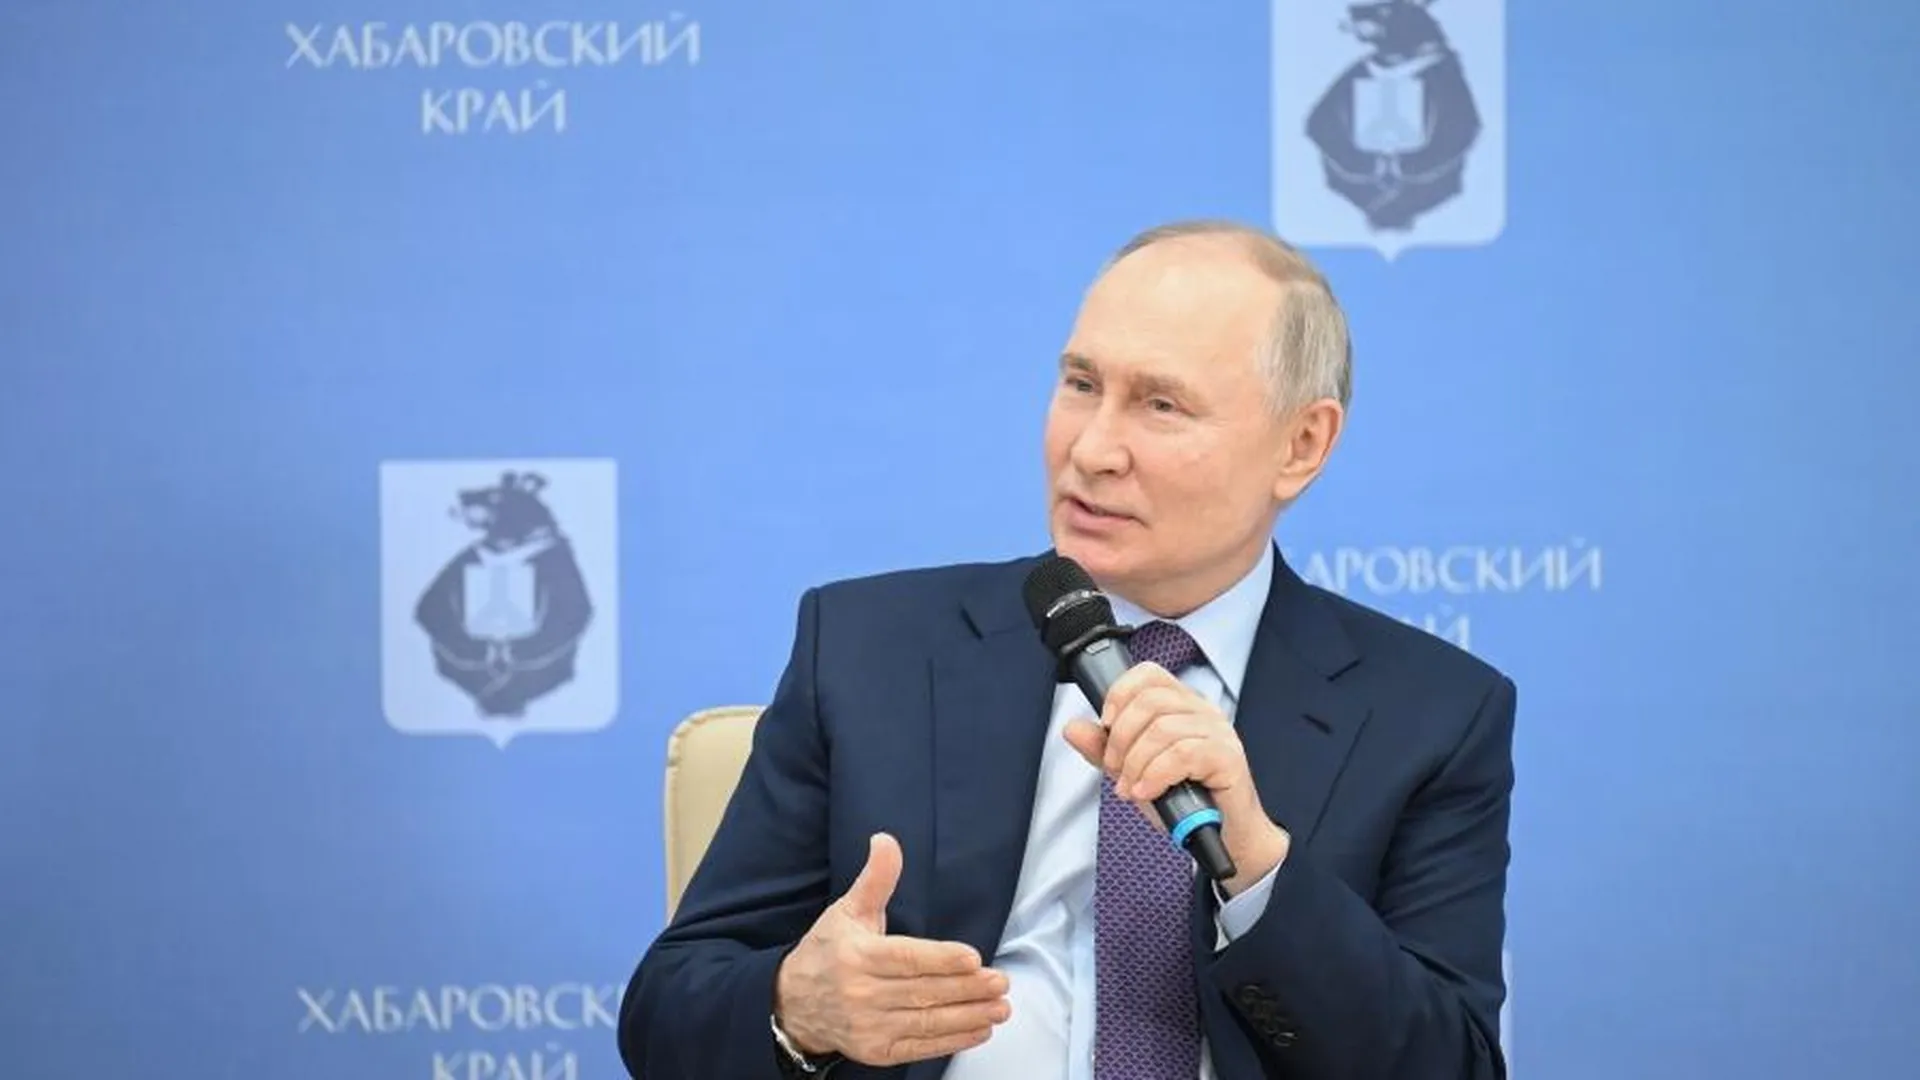 Путин пошутил о месте губернатора Дегтярева в иерархии после Господа